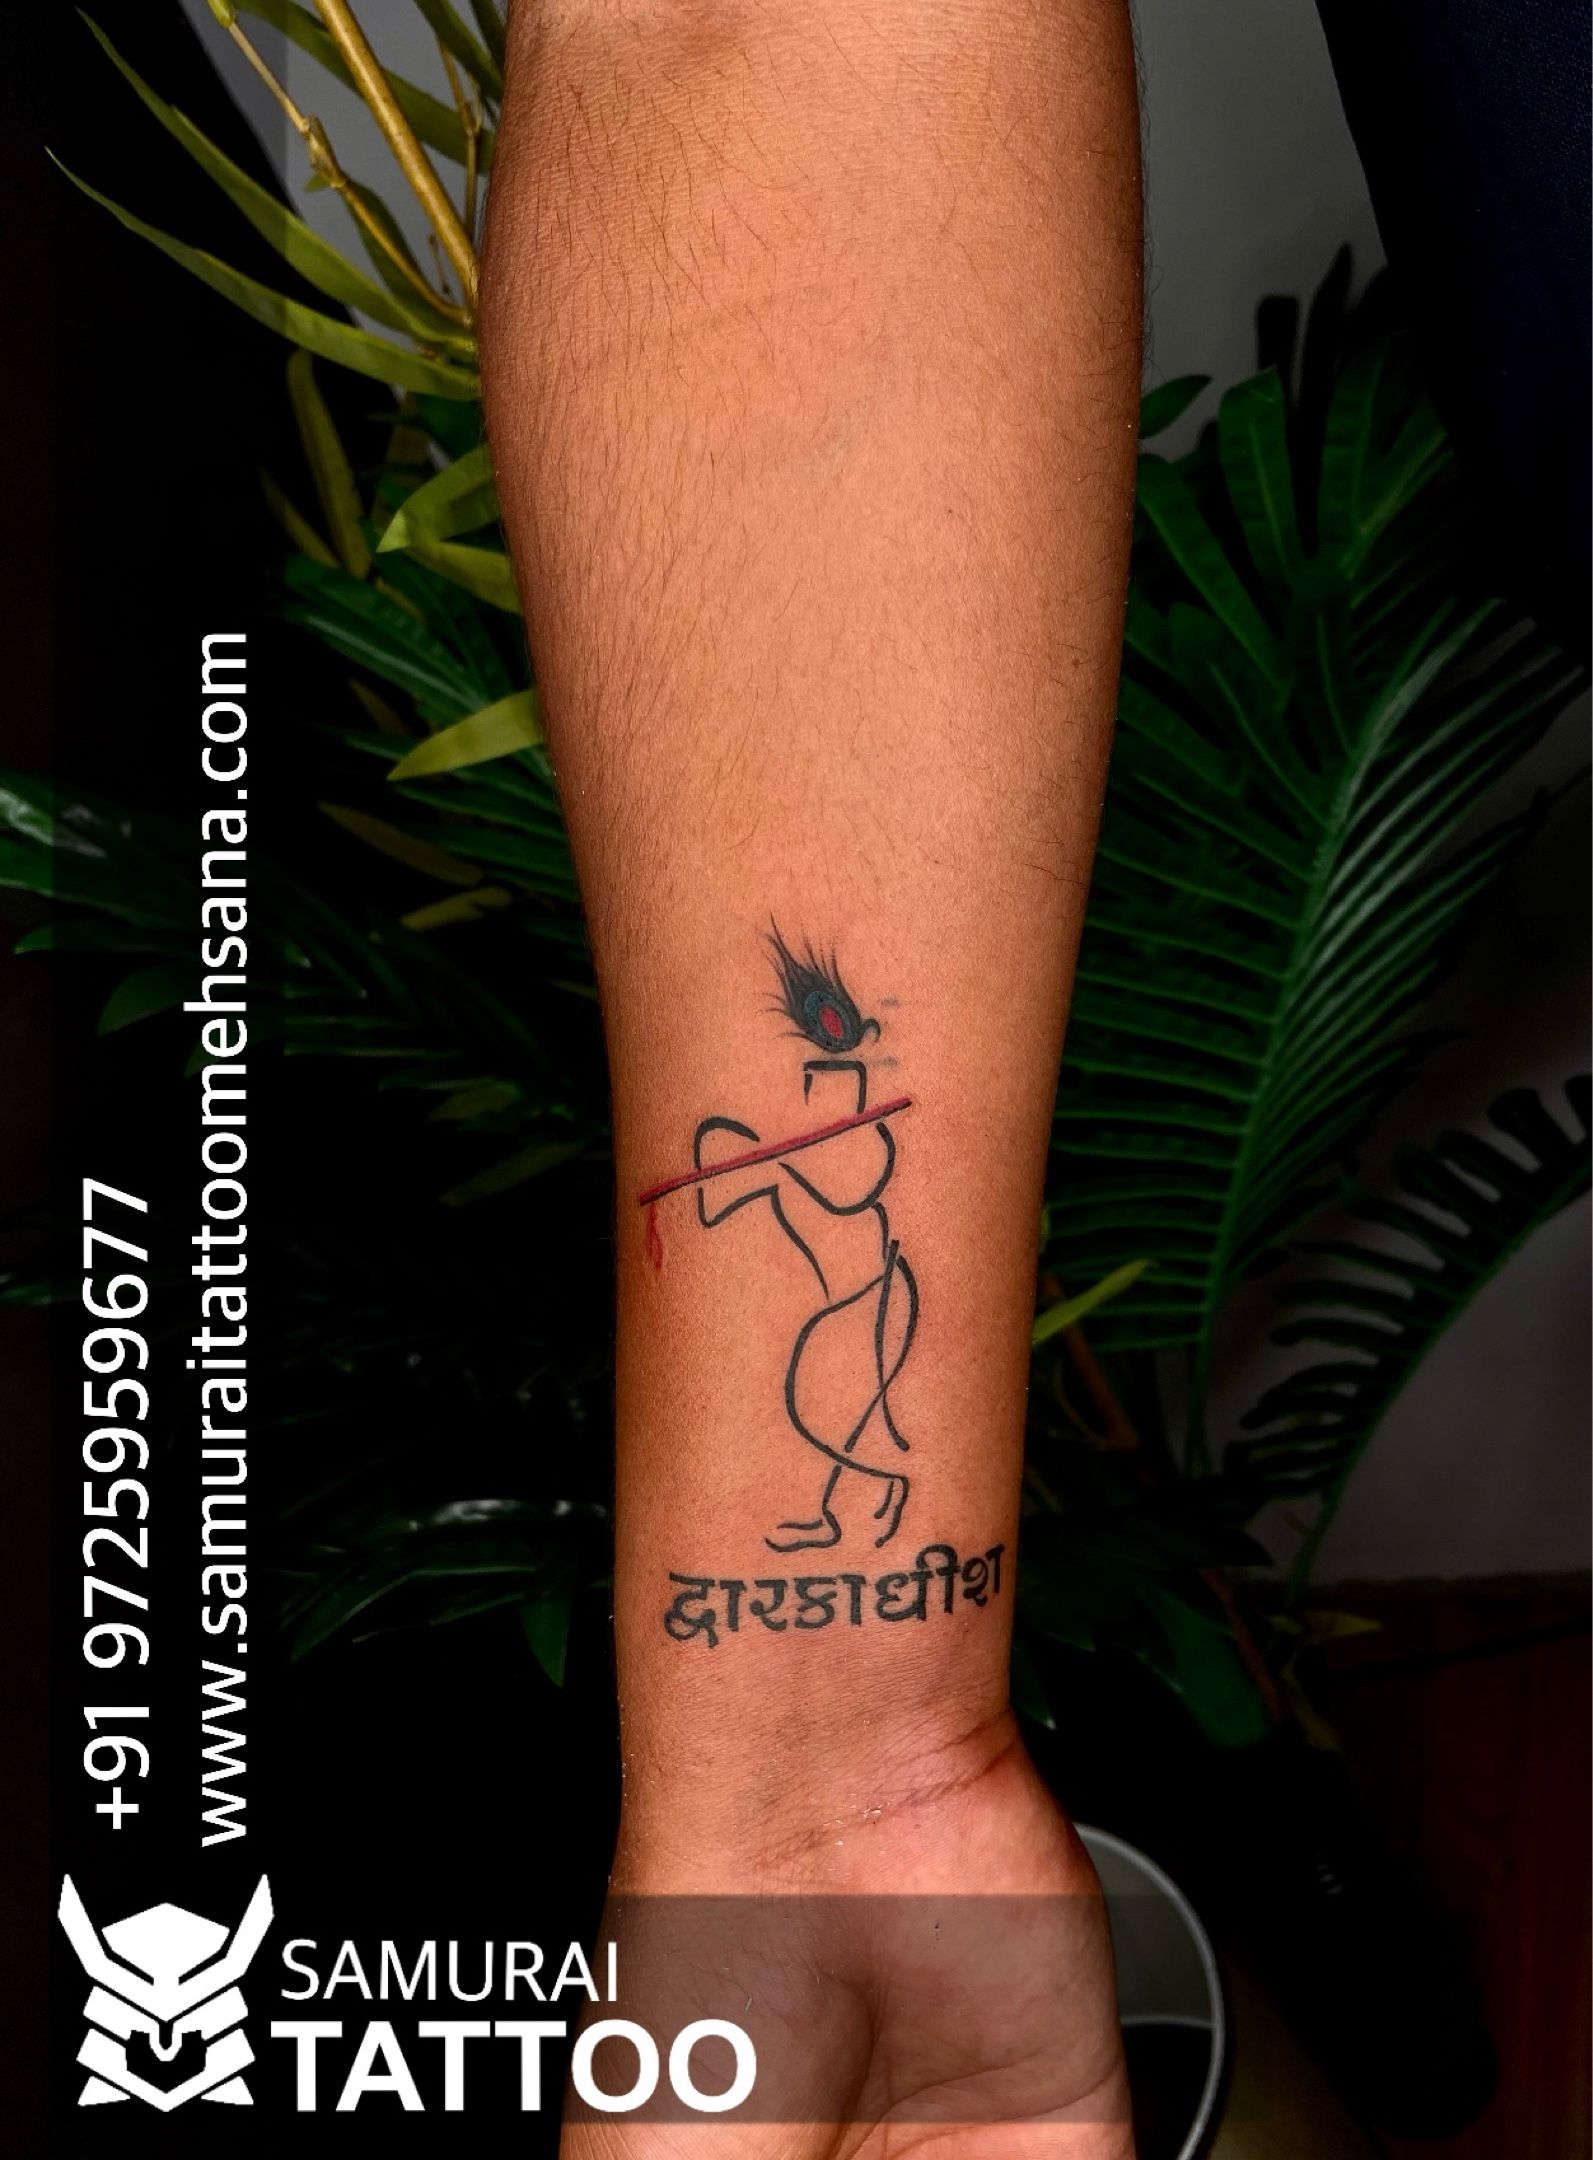 Minimalistic Krishna tattoo | Krishna tattoo, Tattoos, Tattoo designs wrist